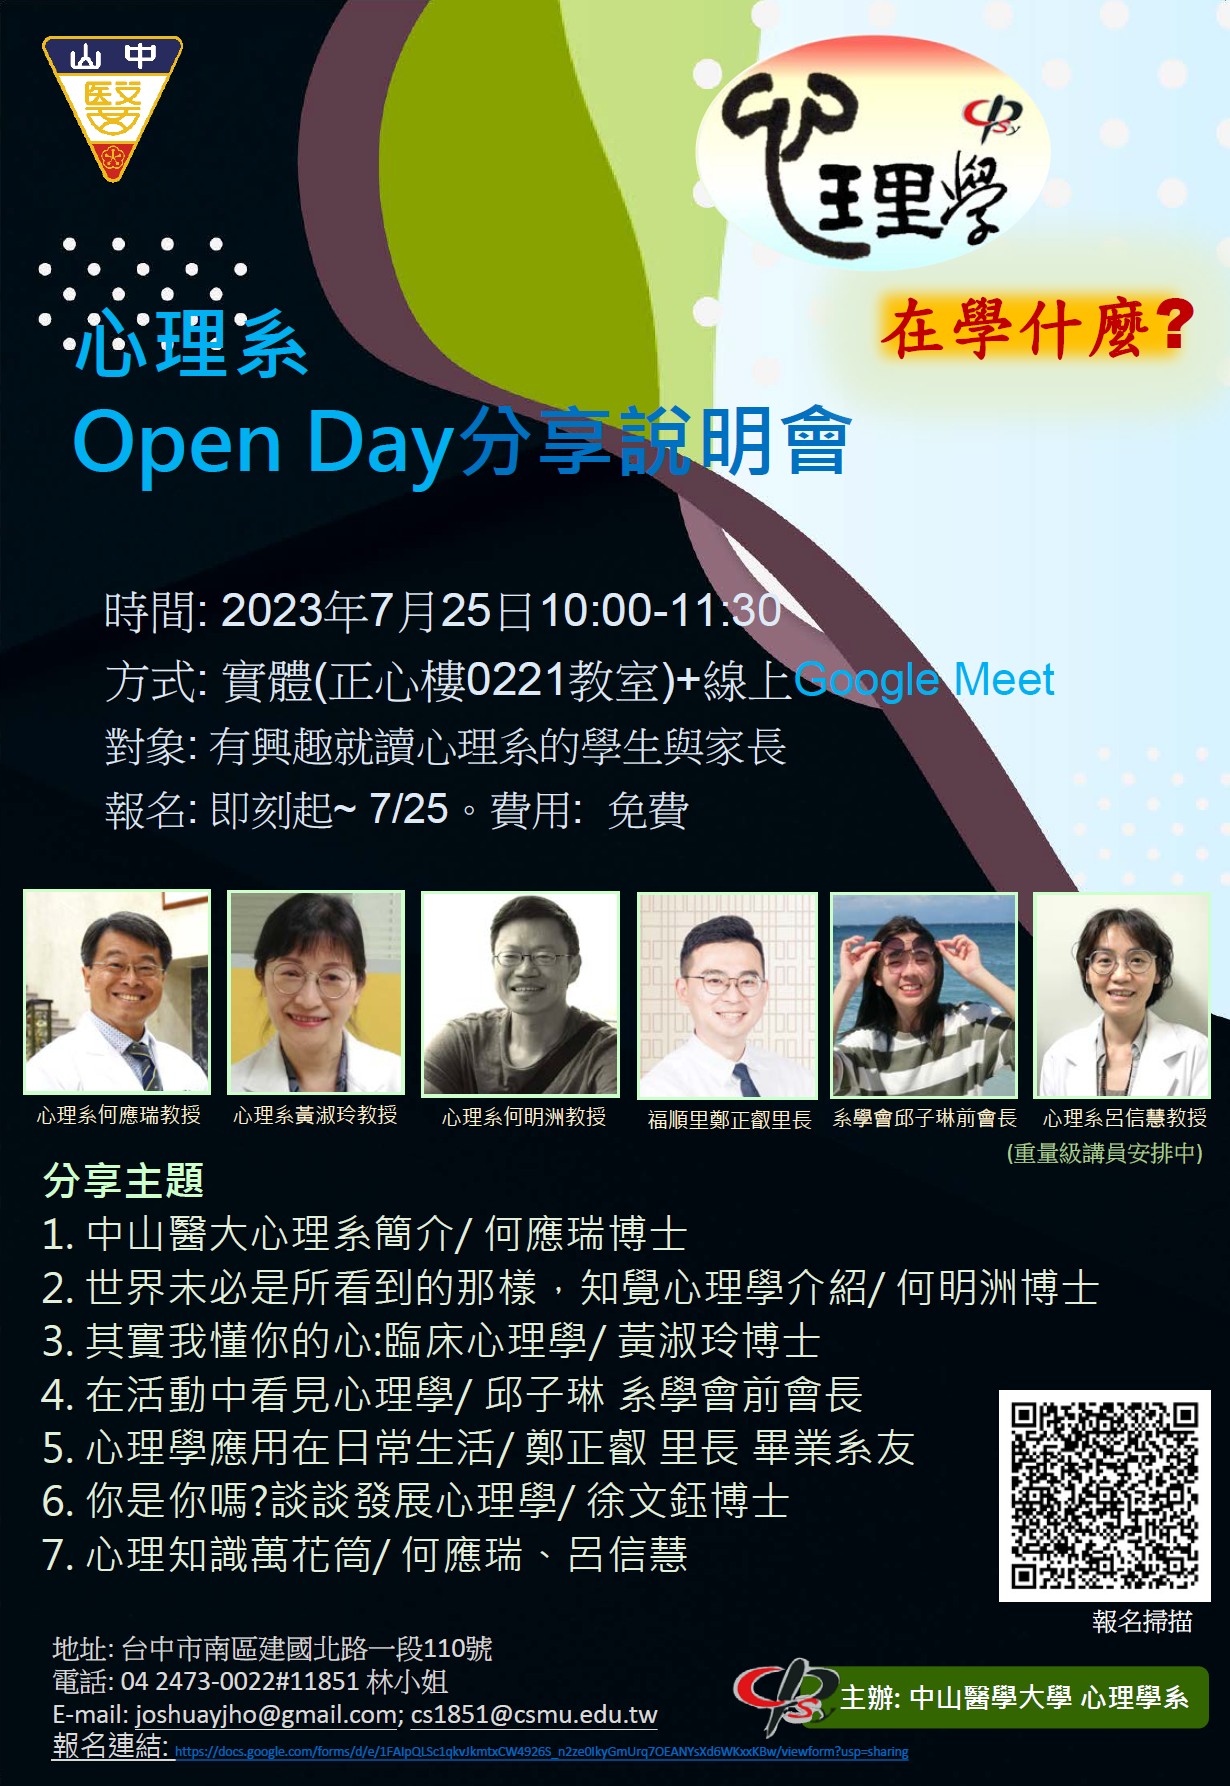 中山醫學大學心理系Open Day分享說明會資料與海報